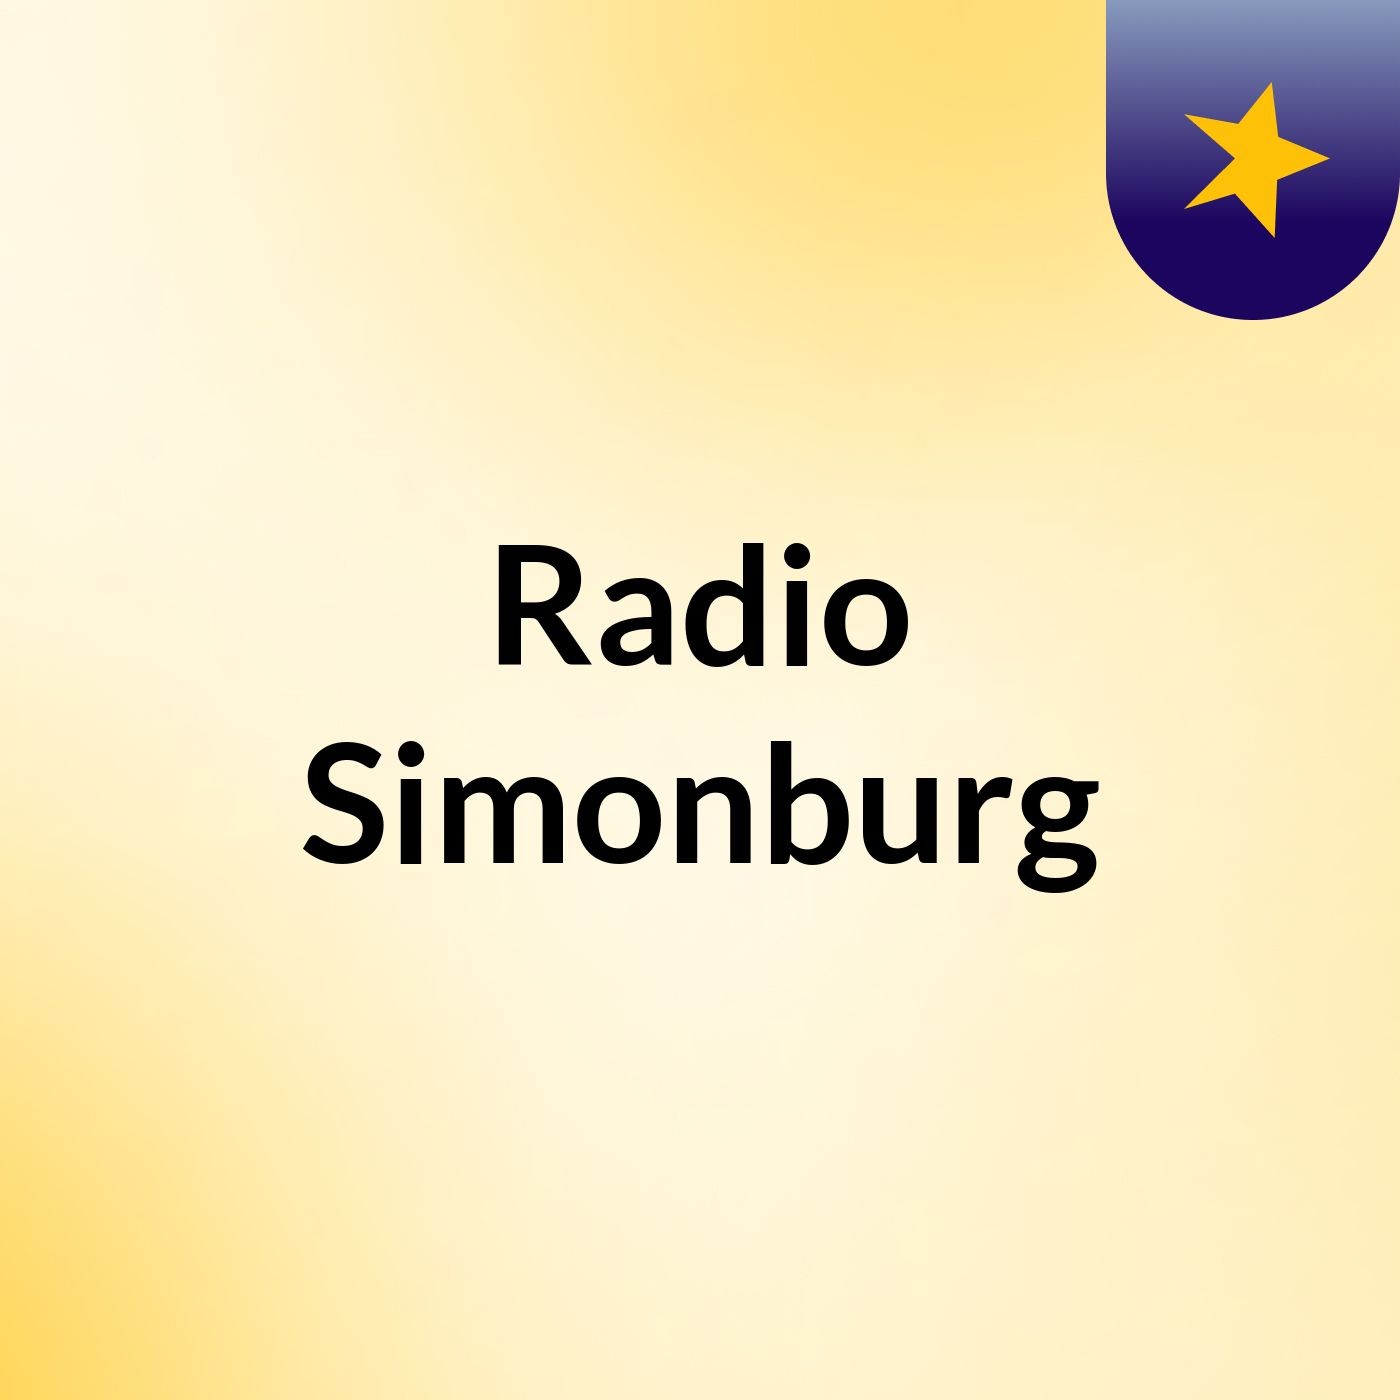 Radio Simonburg